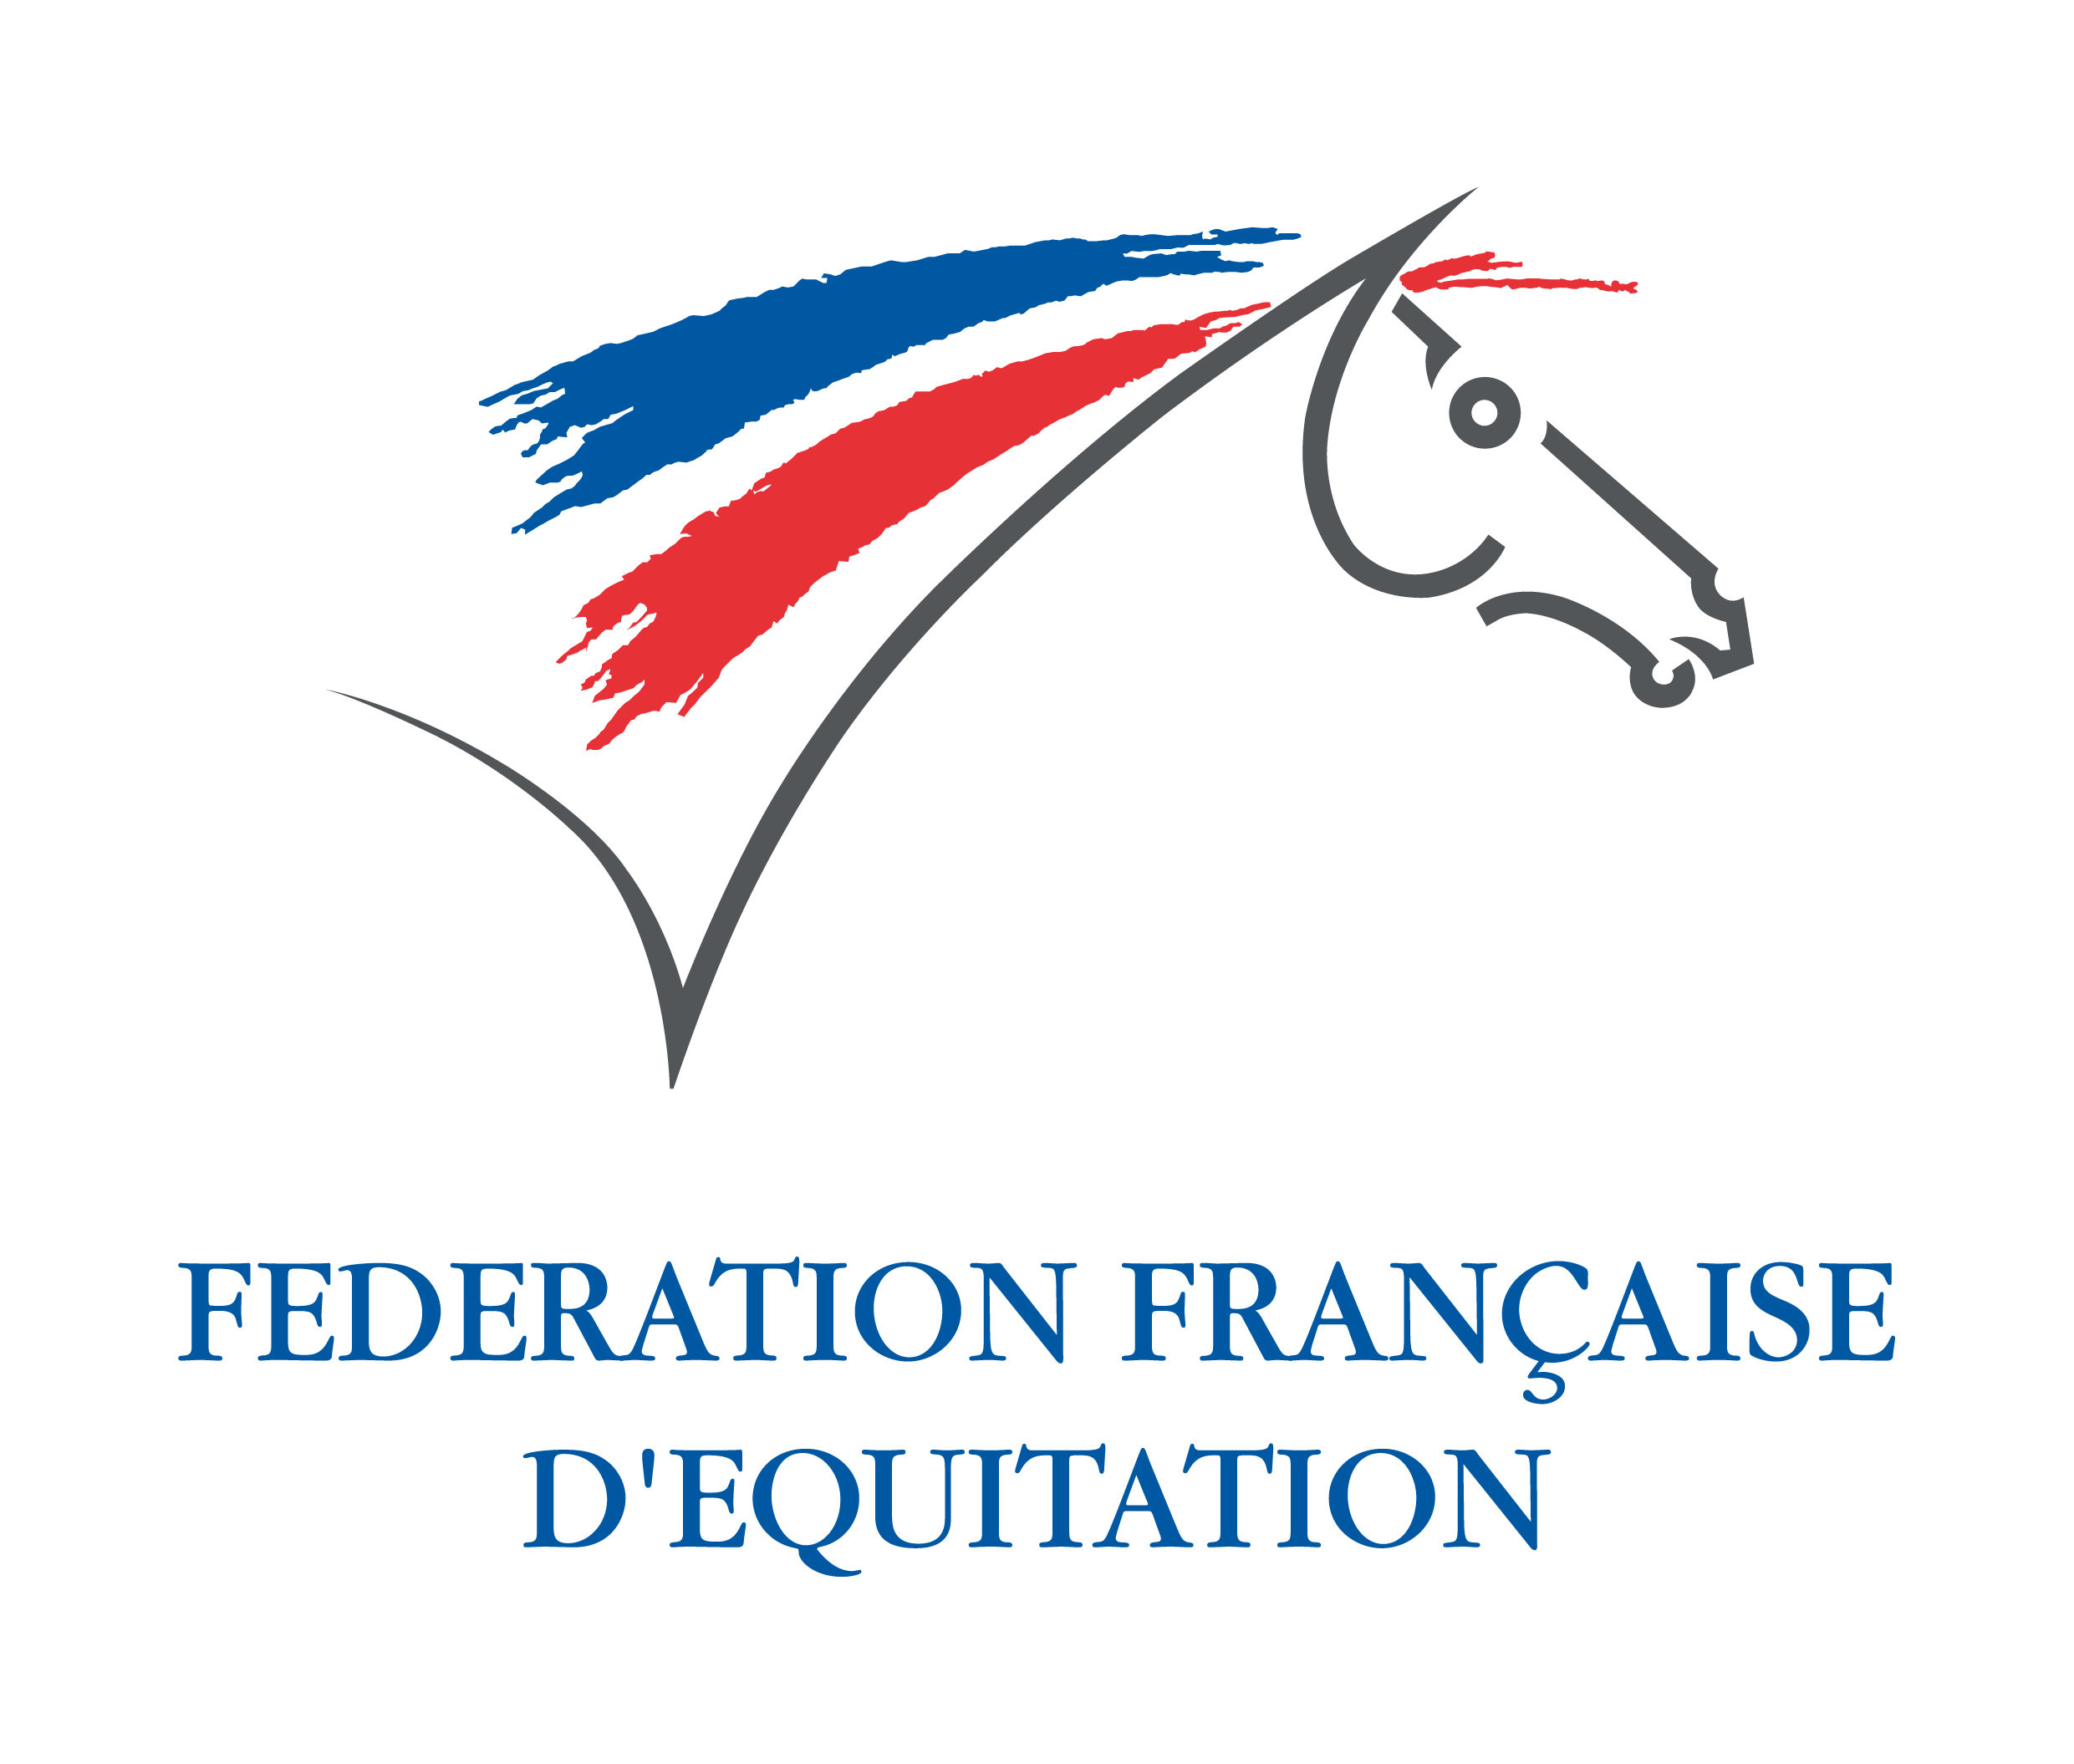 voici l'affiche de la ffe (Fédération Française d'Equitation )